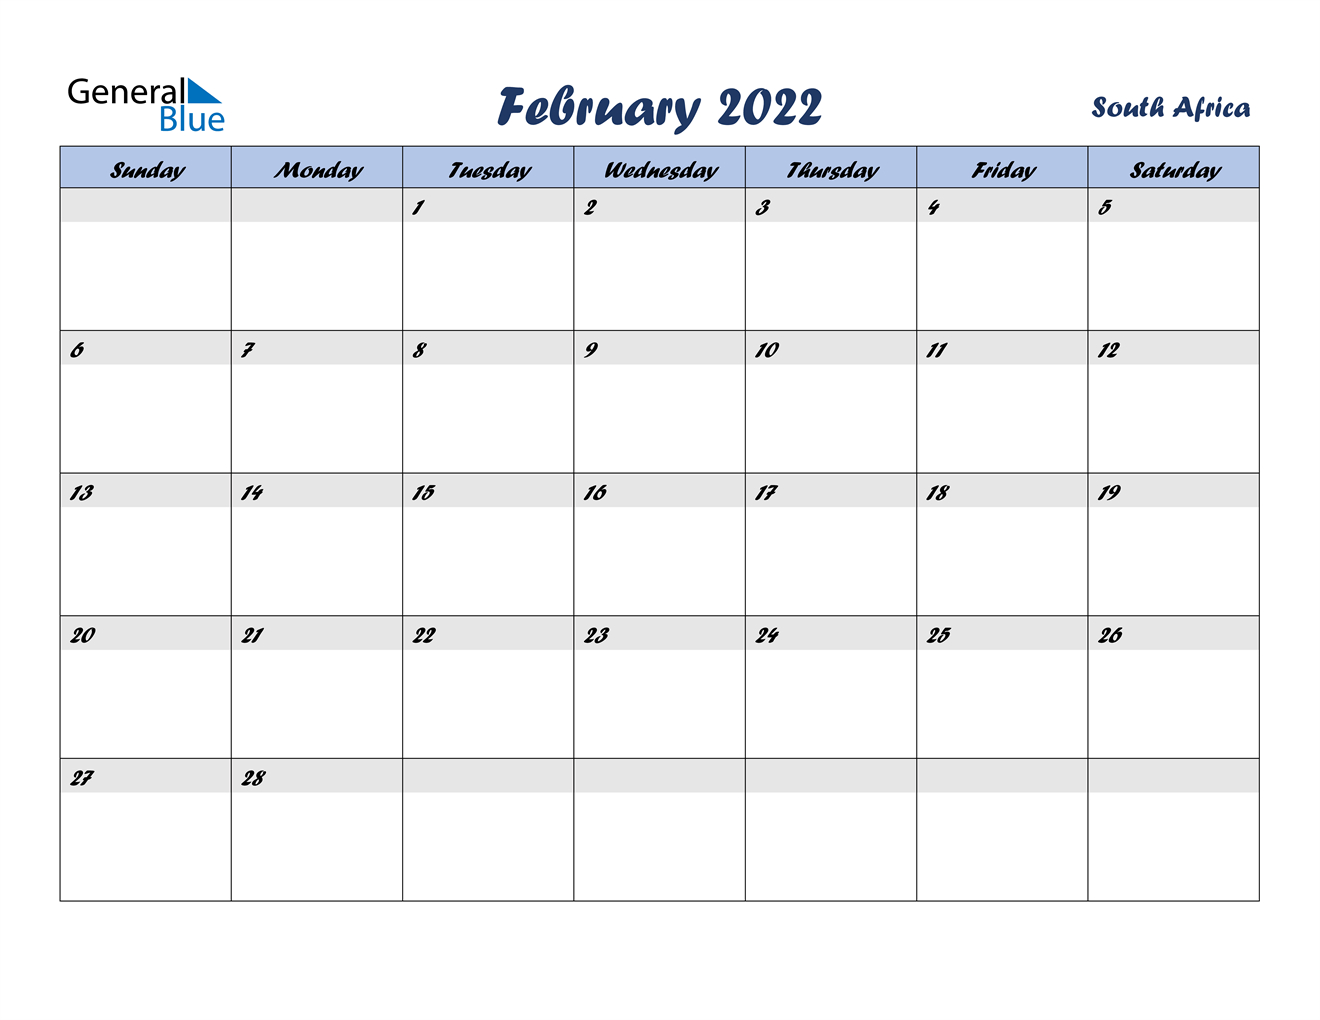 Get February 2022 Calendar Image